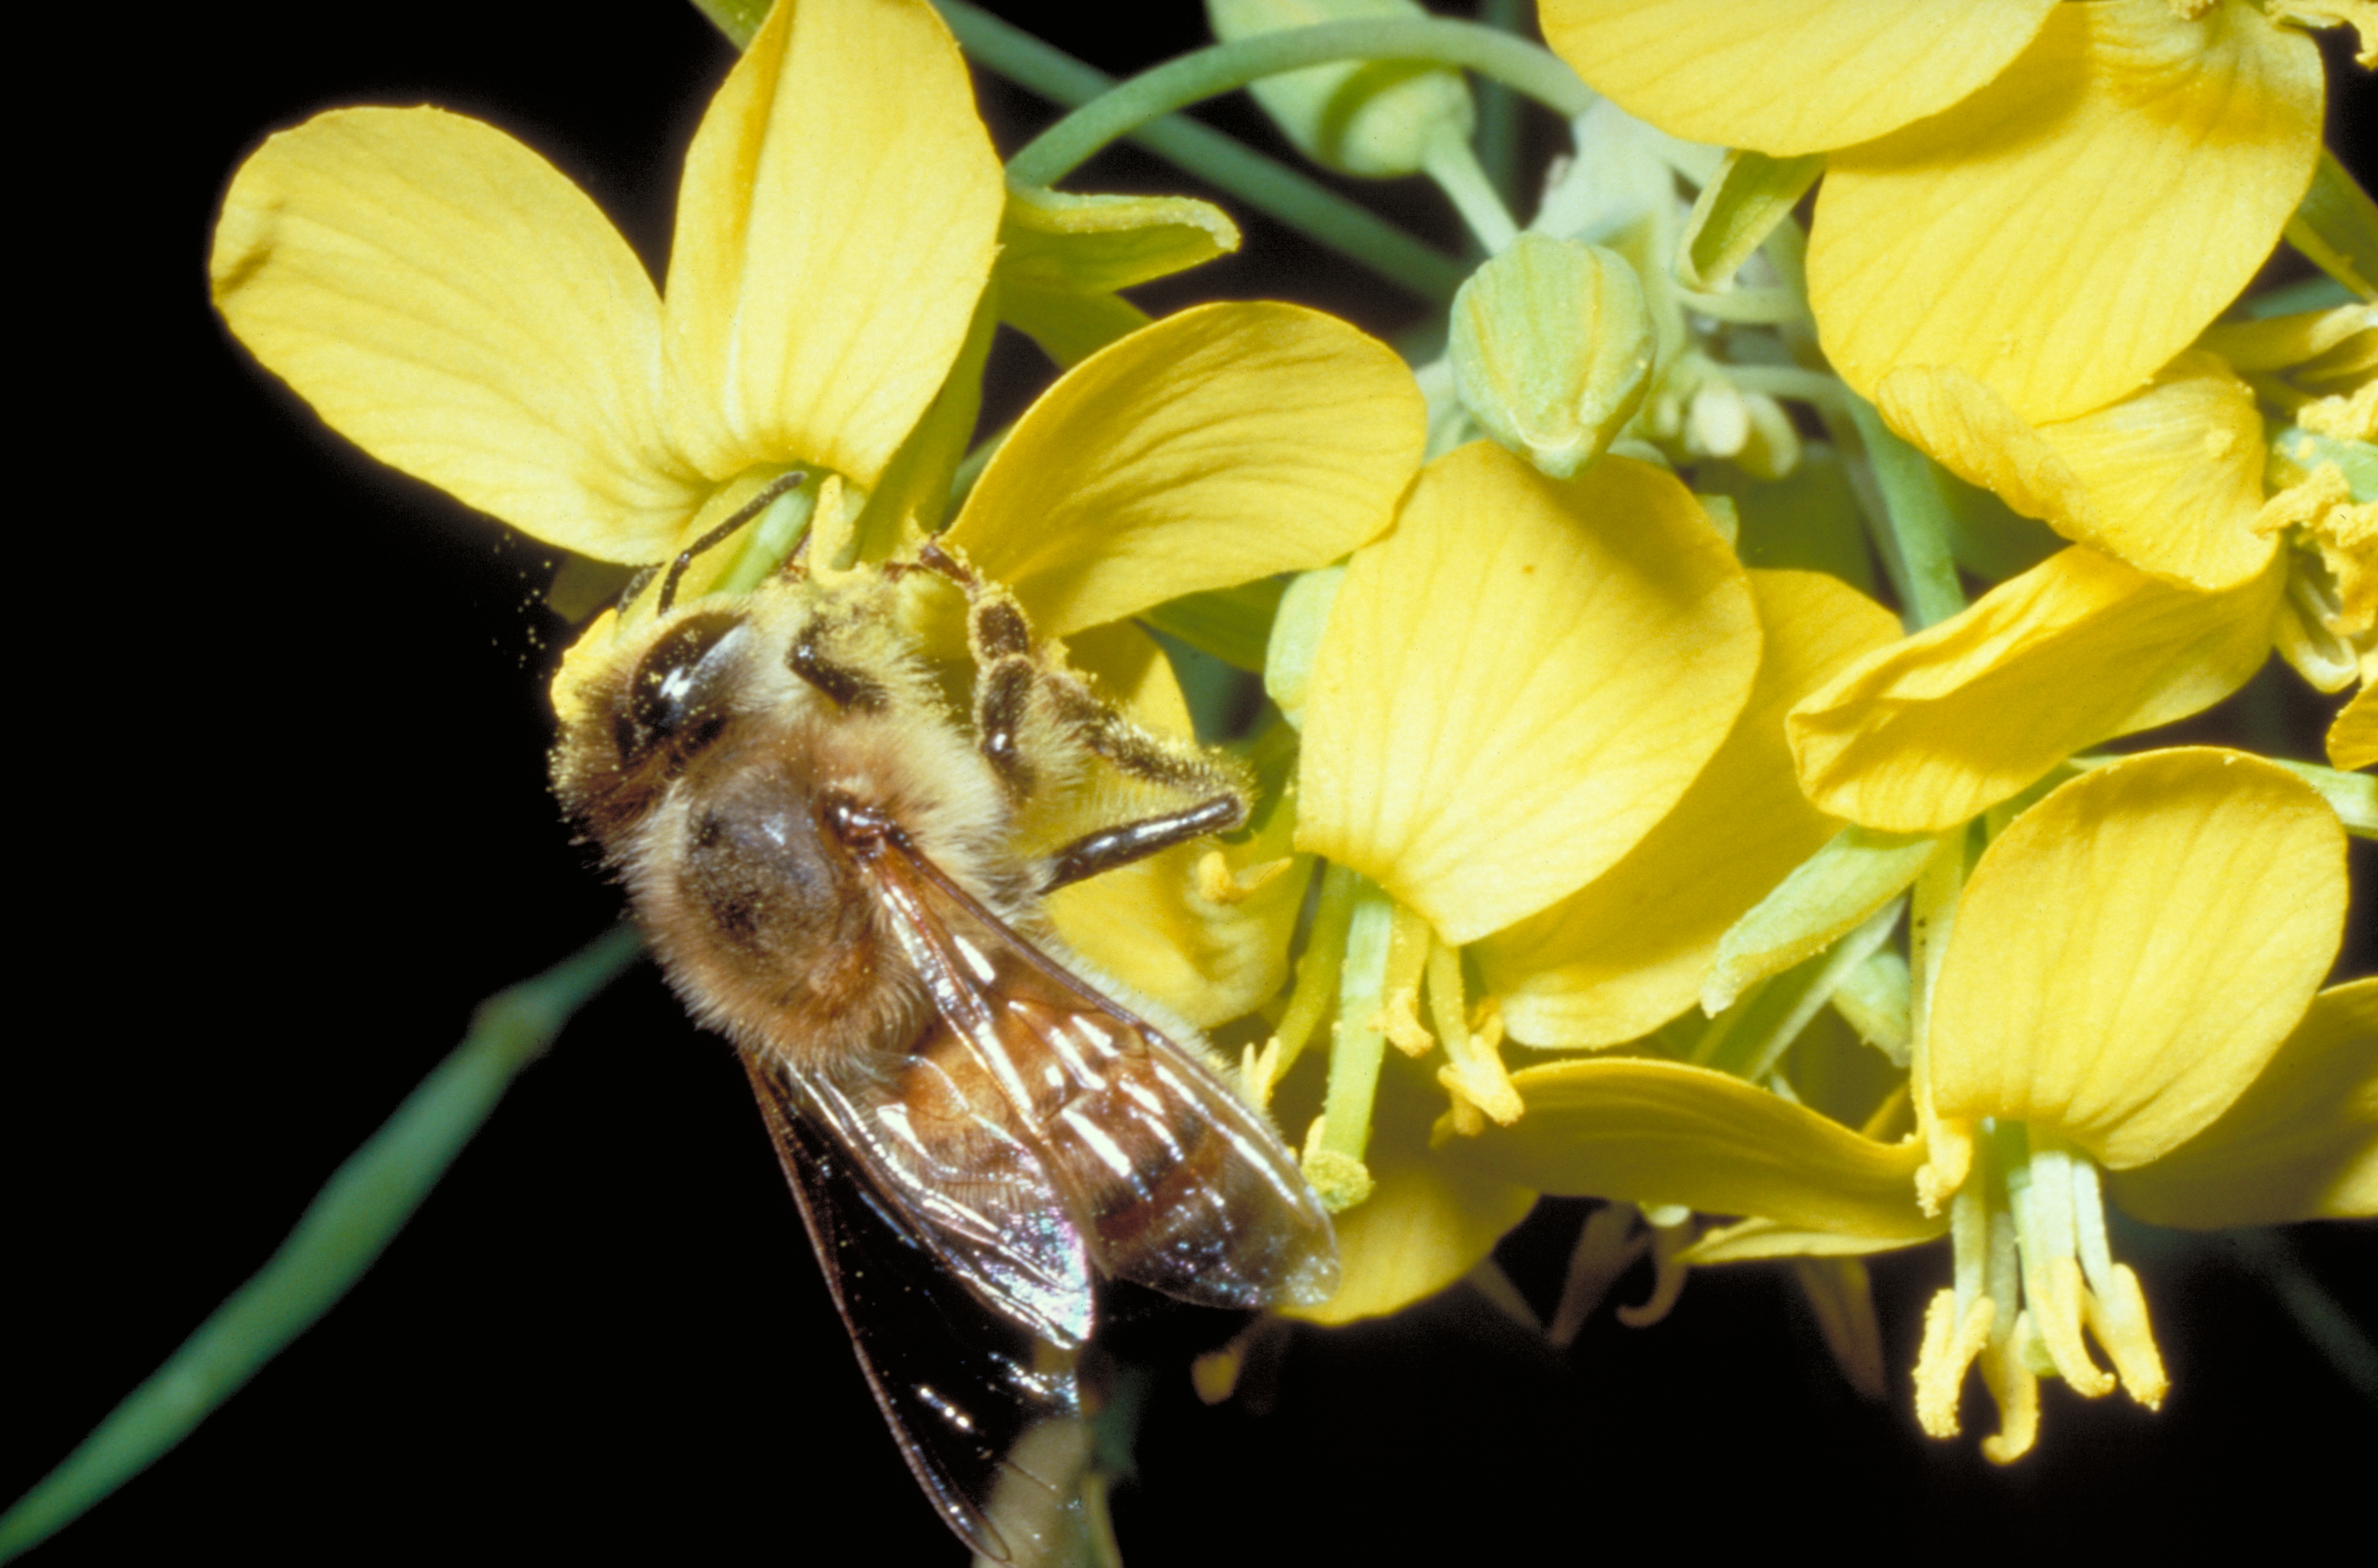 Des outils pour l’évaluation des effets de doses sublétales de pesticides sur les populations d’abeilles